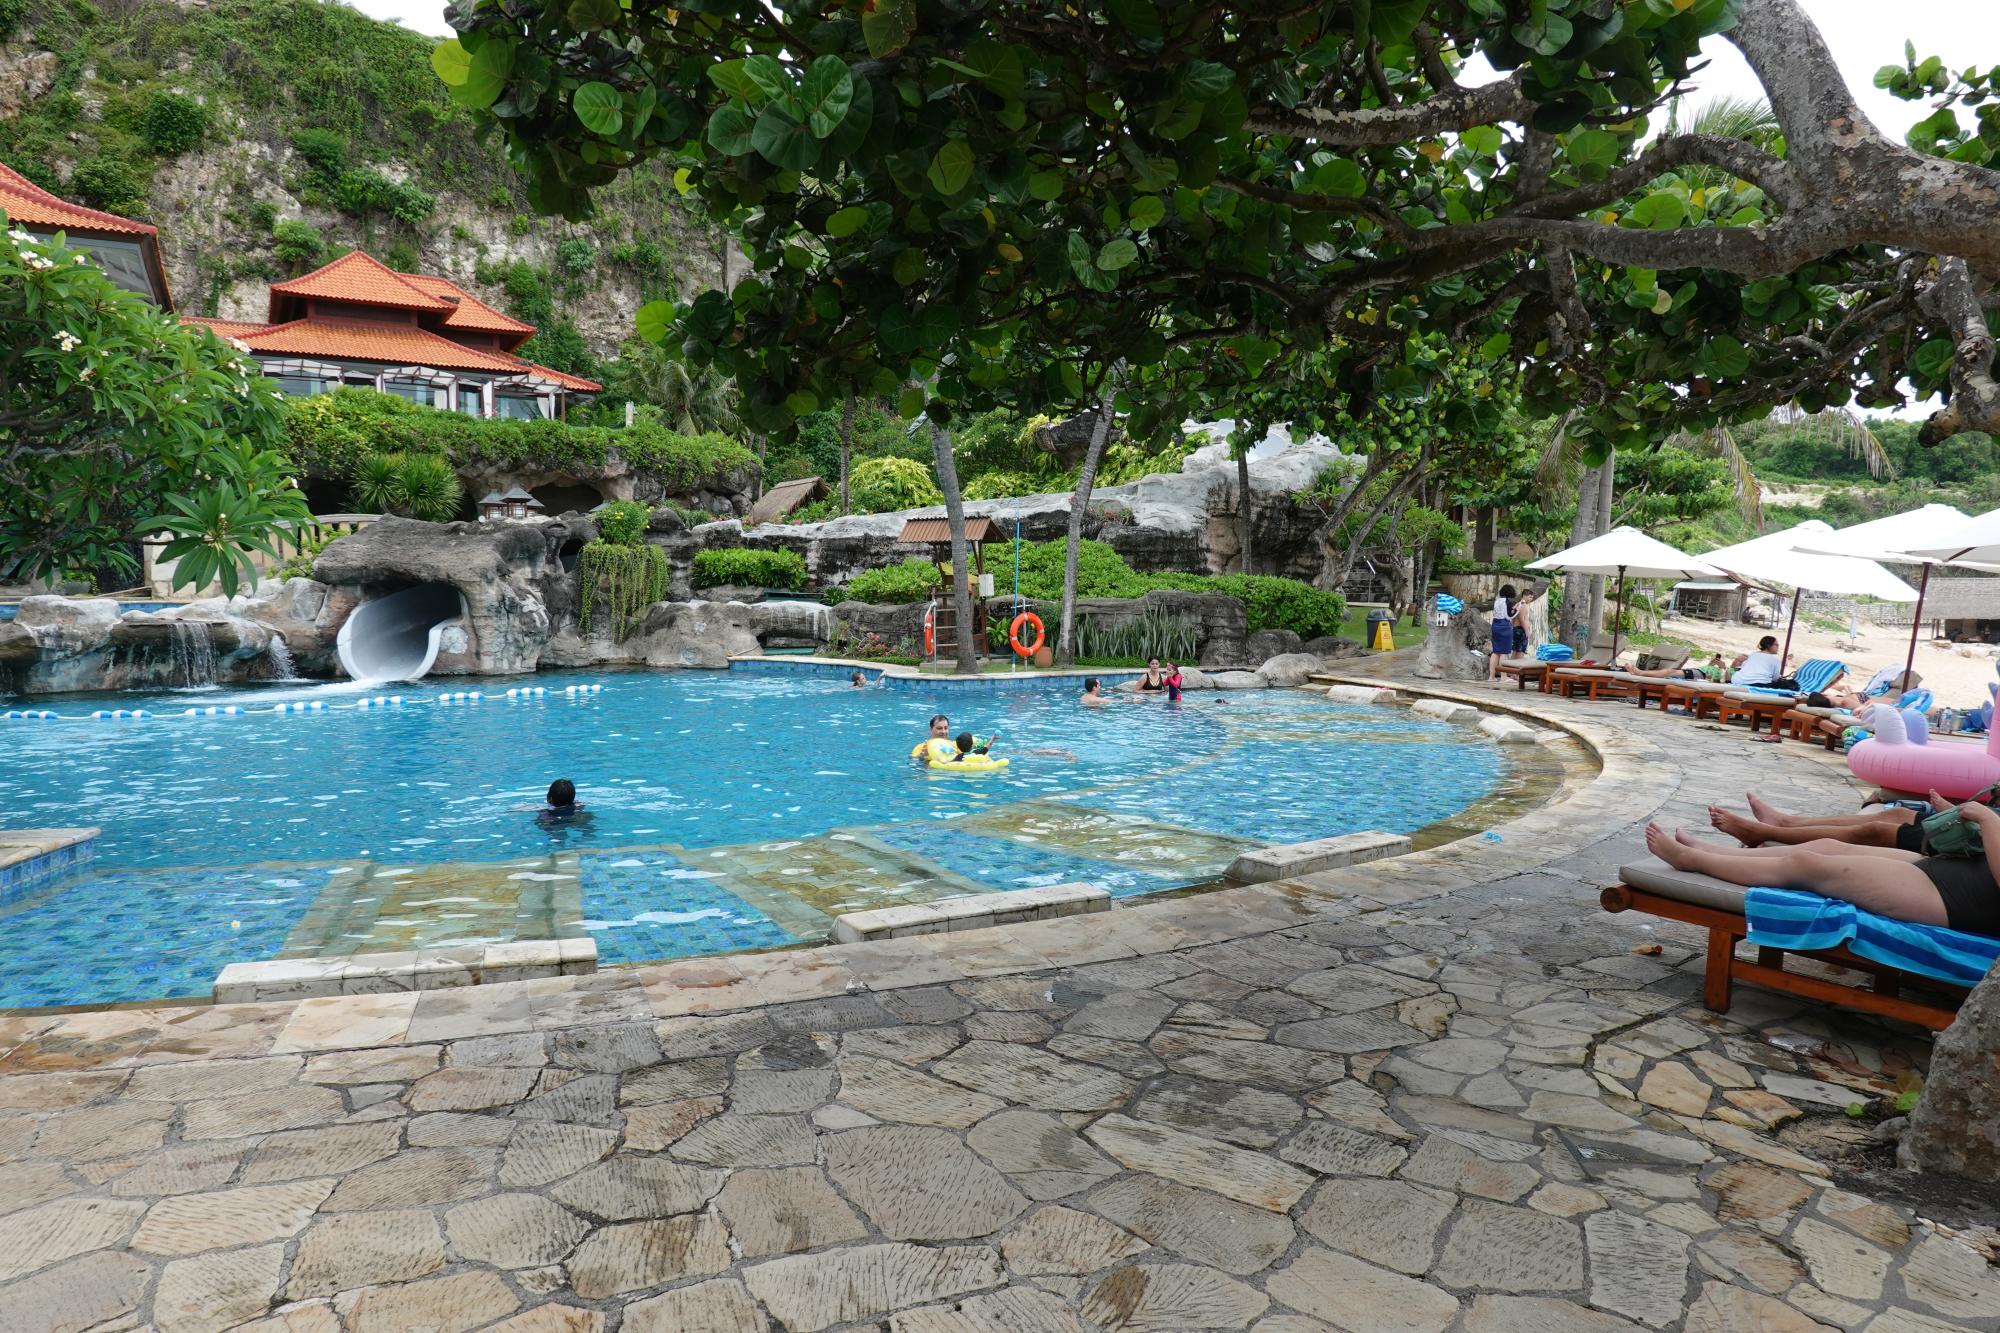 Bali - Hilton Pool #1